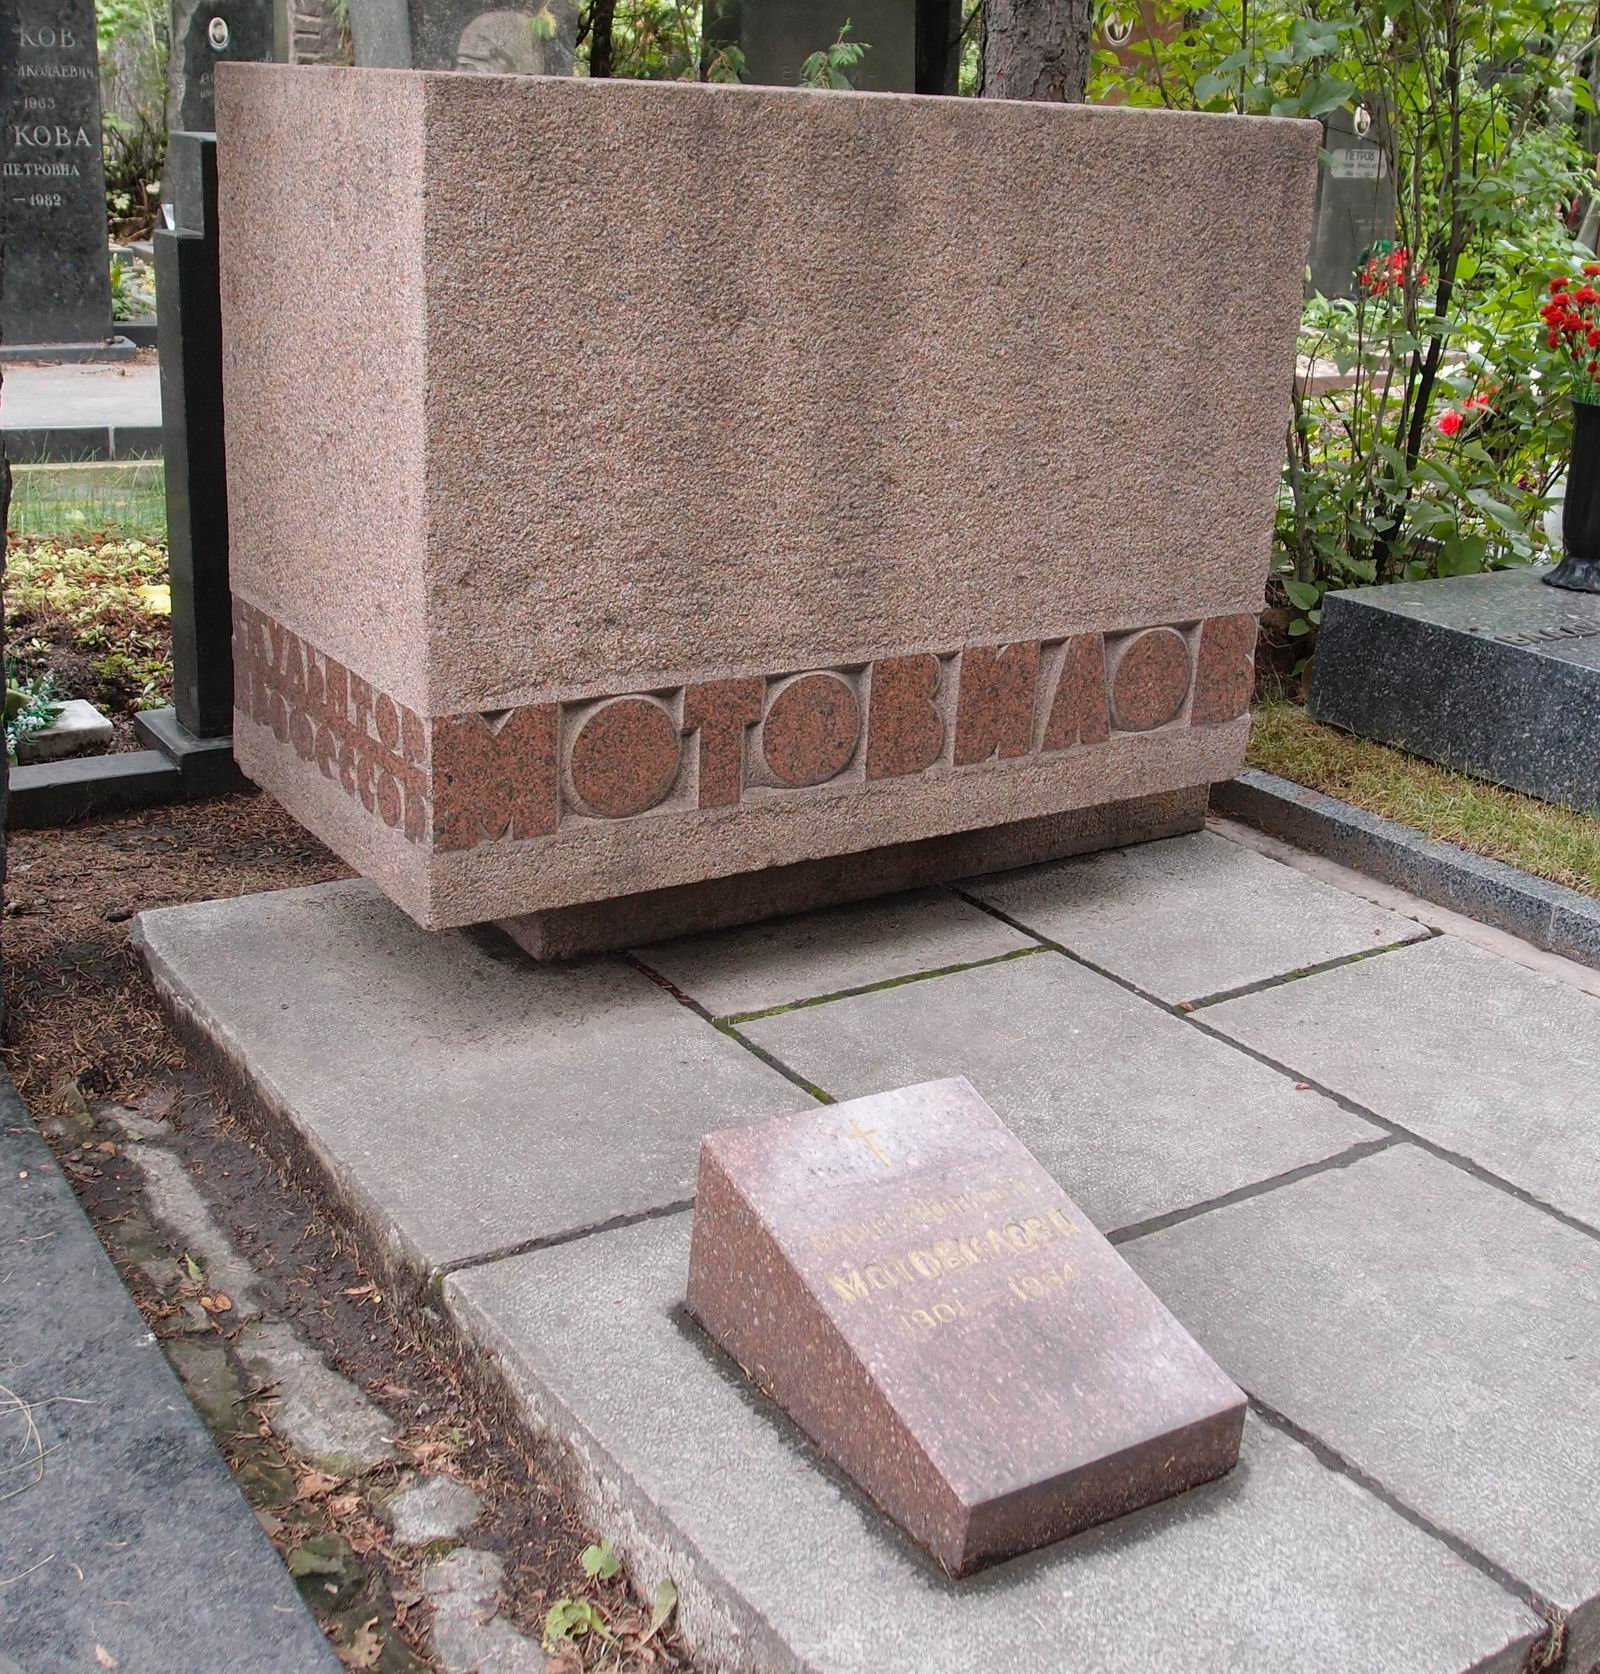 Памятник на могиле Мотовилова Г.И. (1884–1963), ск. А.Емельянцев, арх. В.Калмыков, на Новодевичьем кладбище (8–30–8). Нажмите левую кнопку мыши чтобы увидеть другой ракурс памятника.